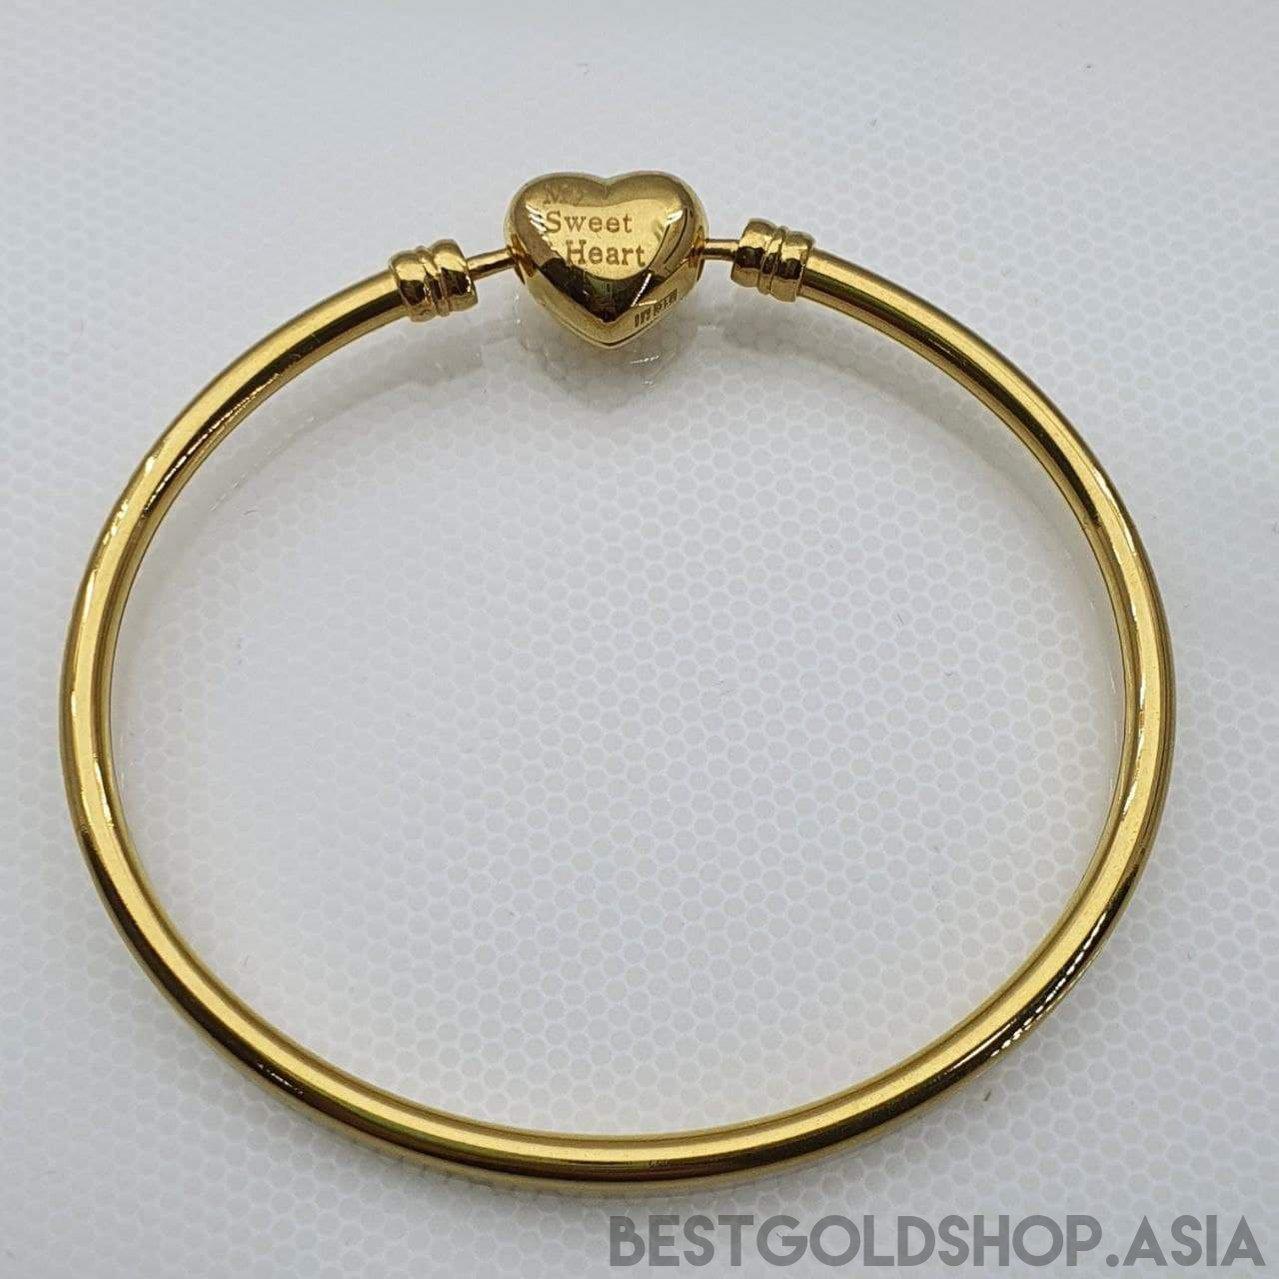 22k / 916 Gold Charm Bangle (Heart Lock) By Best Gold Shop V2-bangle-Best Gold Shop